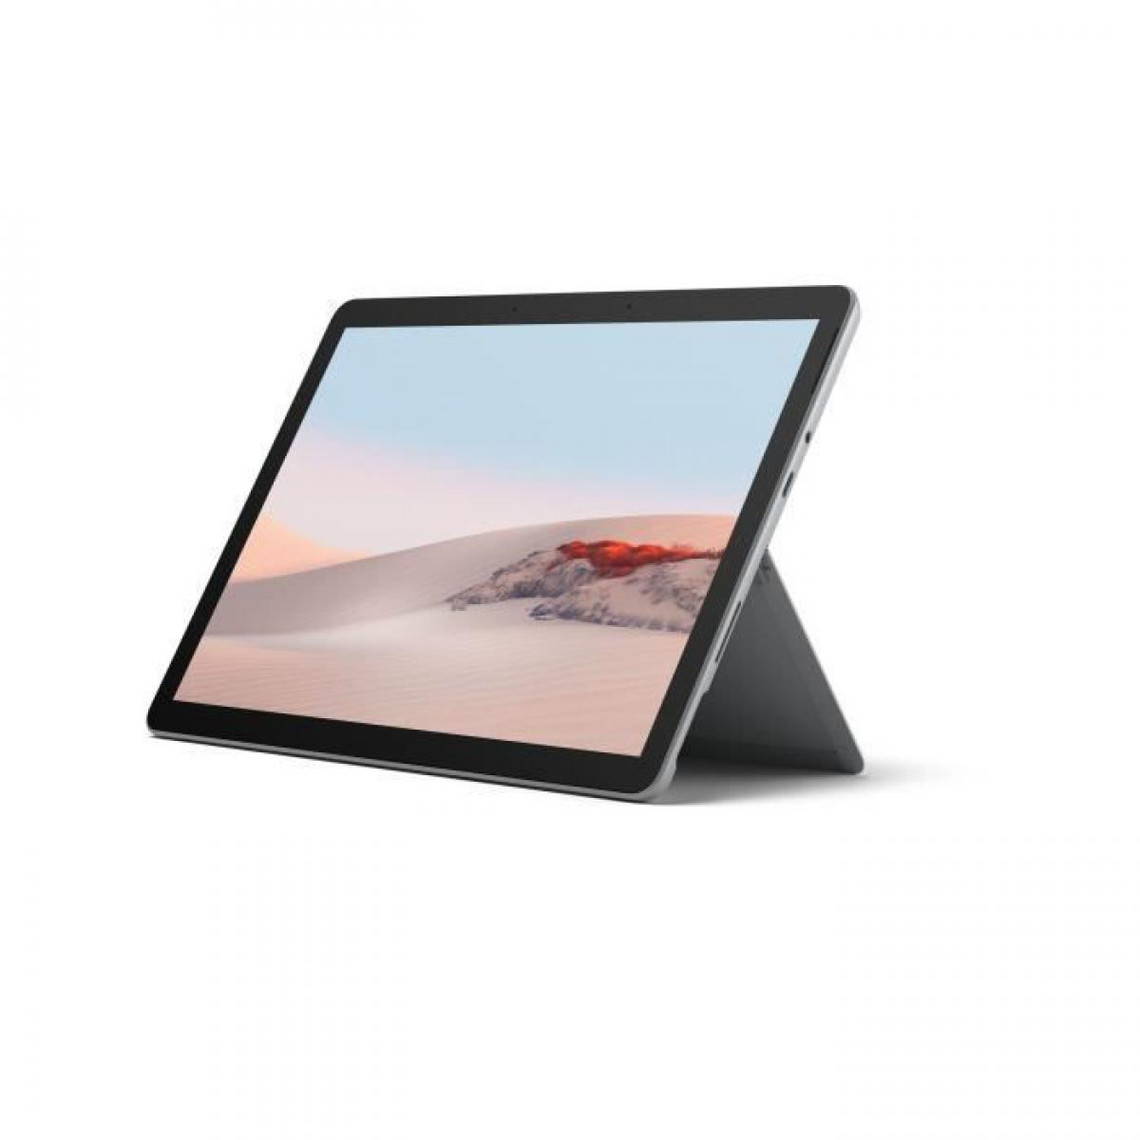 Microsoft NOUVEAU - MICROSOFT Surface Go 2 - 4G+/LTE, 8Go RAM, 128Go SSD, processeur Intel Core m3